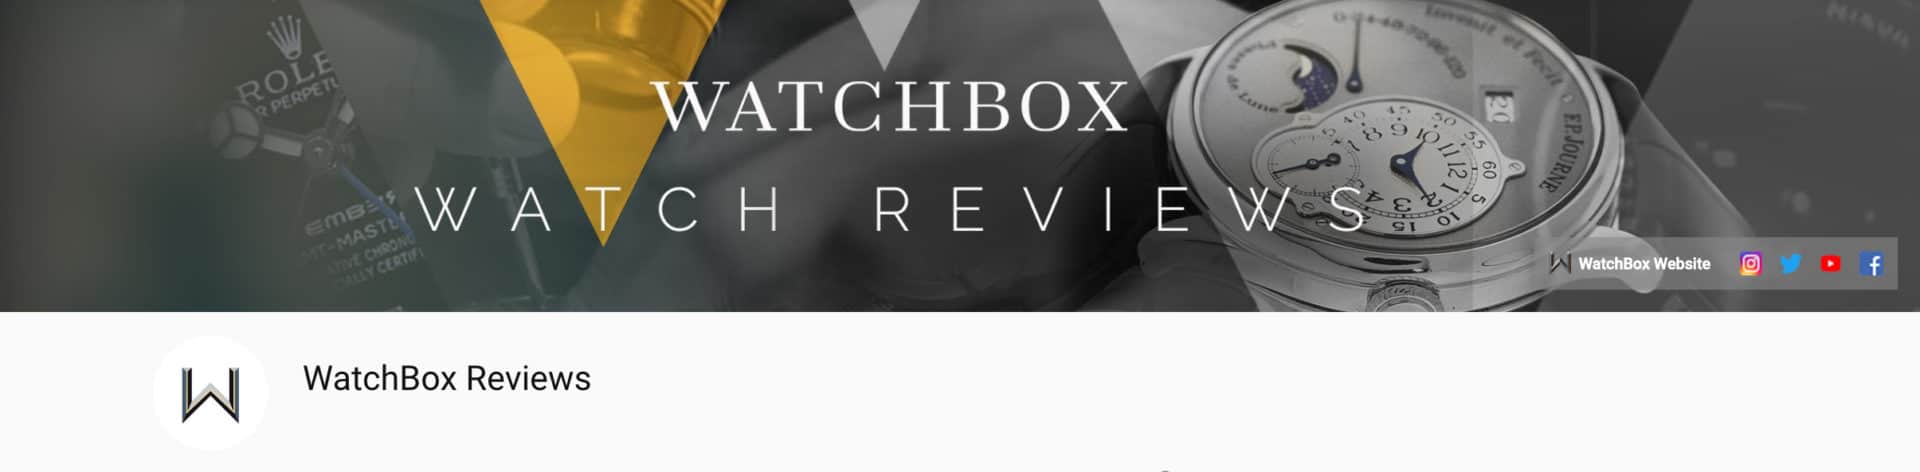 yt watchbox reviews